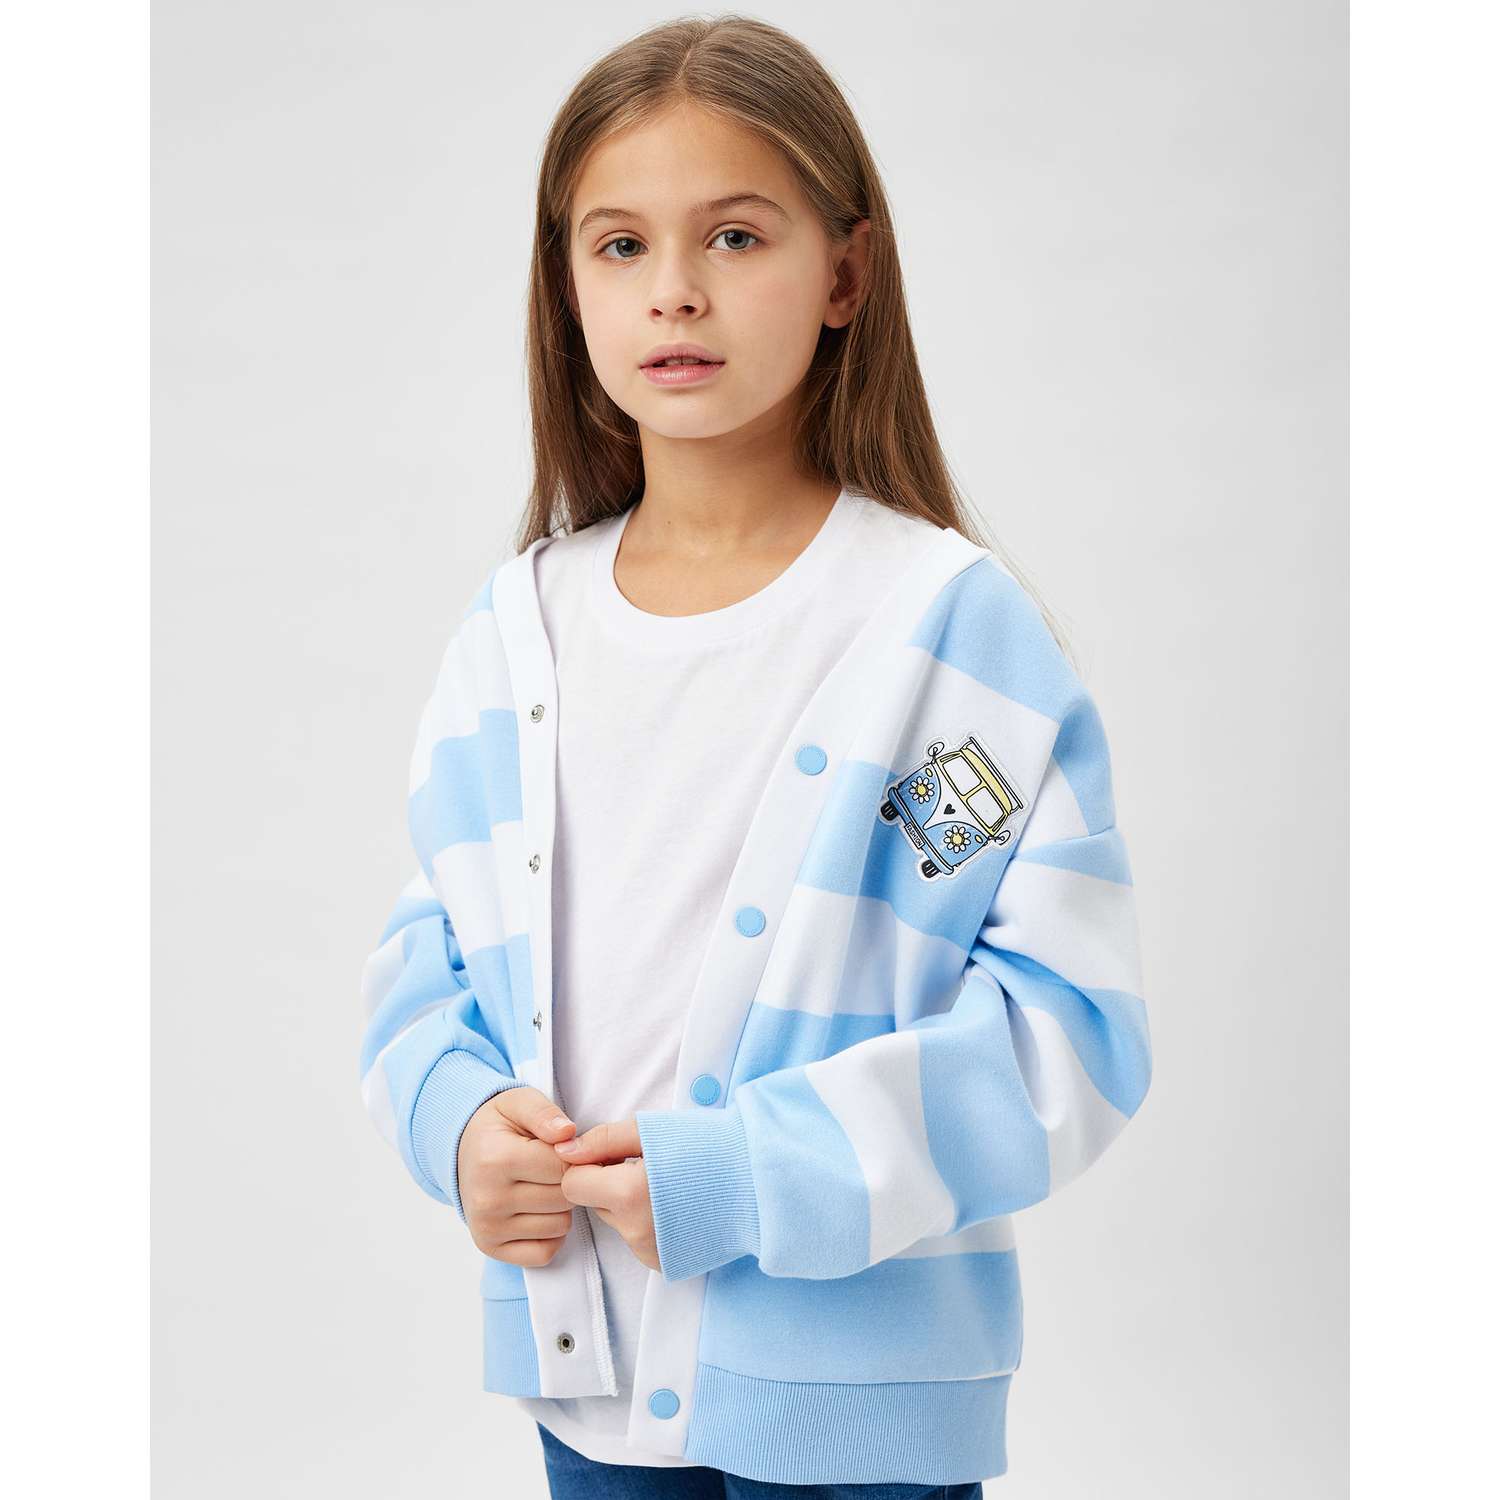 Кардиган Futurino Fashion цвет голубой страна производства Китай  S24FF3-0J70tg-55 купить по цене 1299 ₽ в интернет-магазине Детский мир